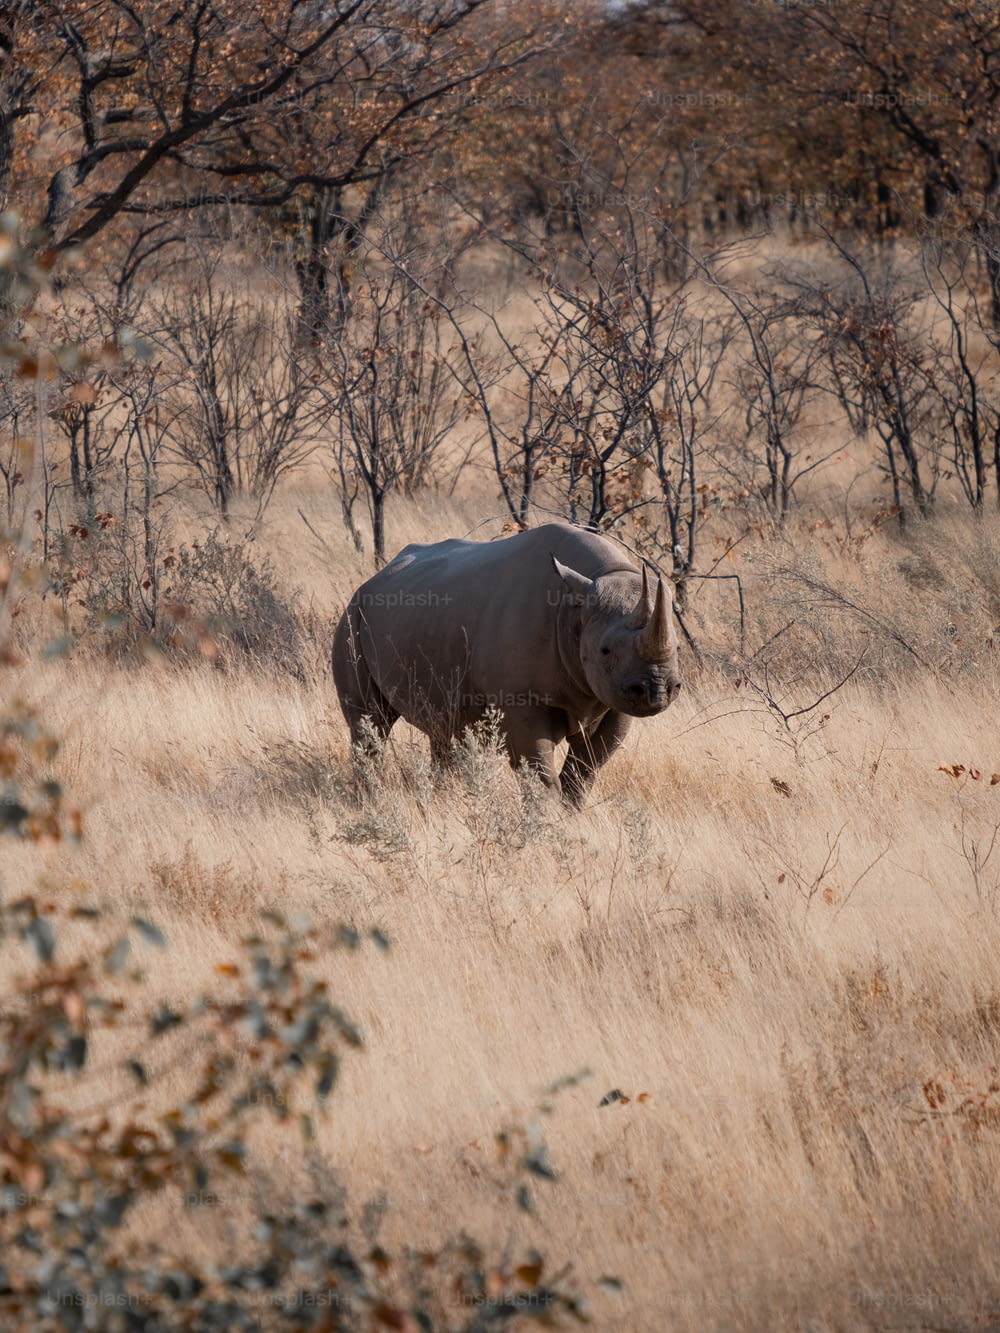 Un rinoceronte en un campo